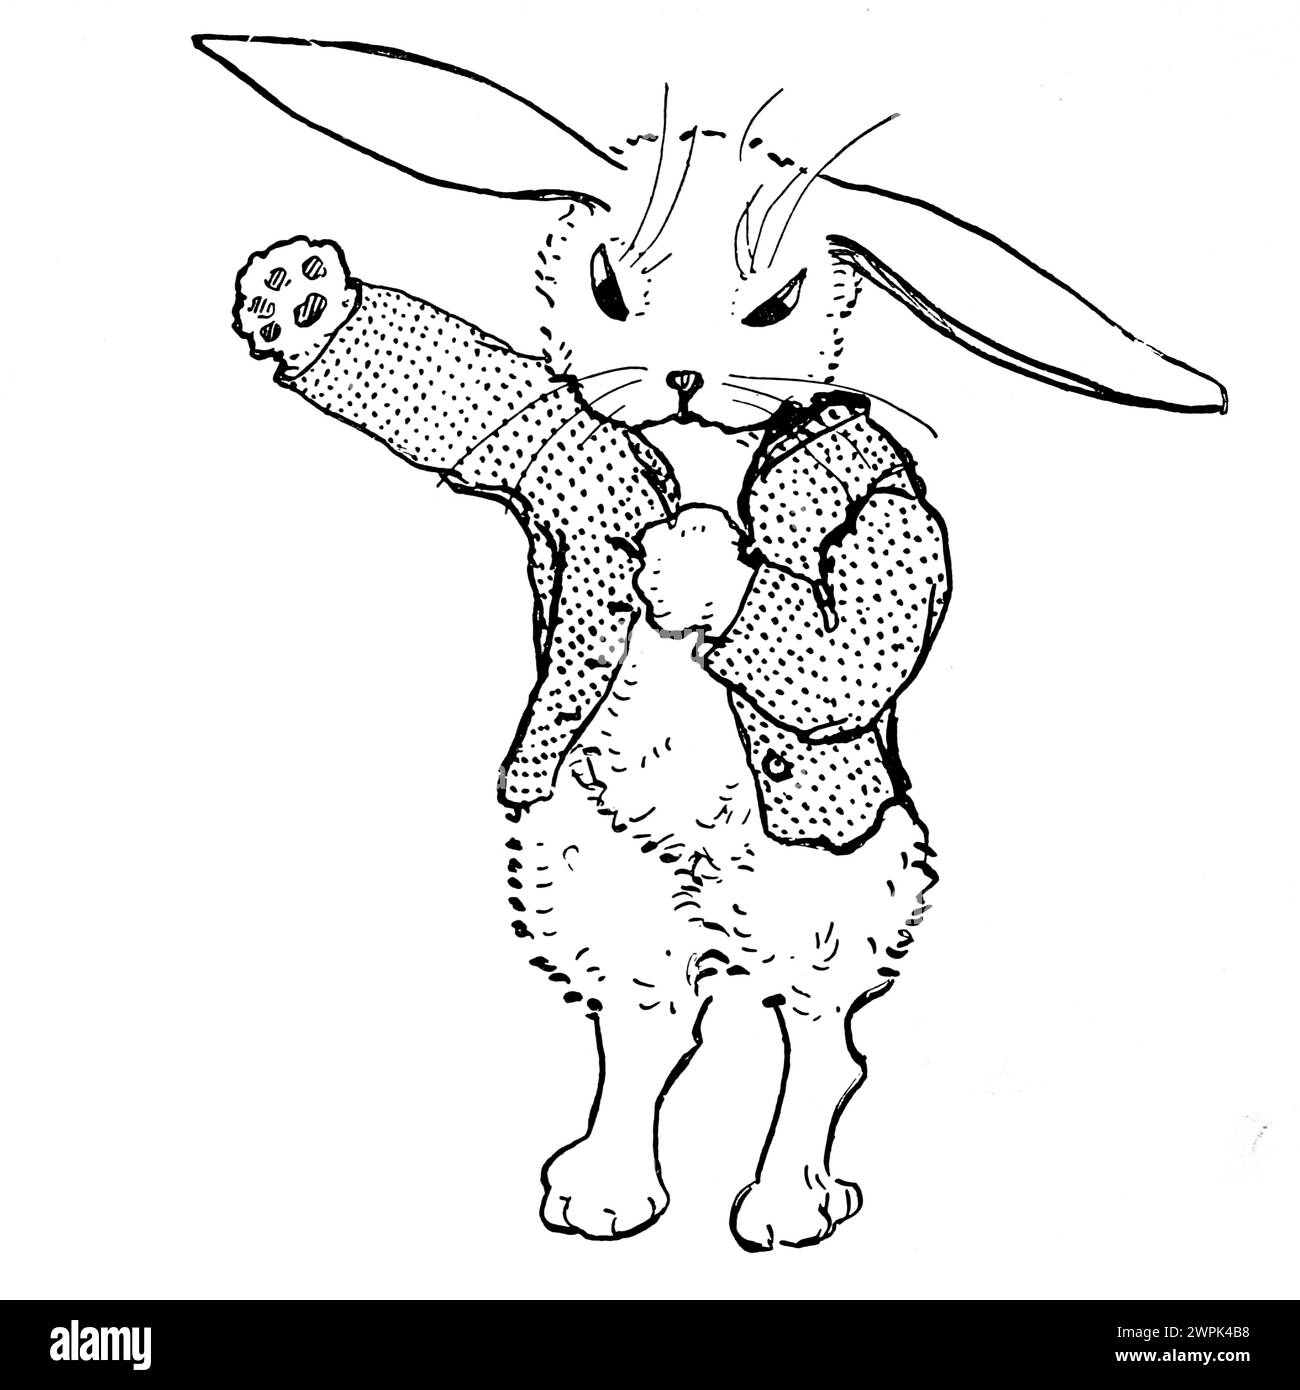 Il a mis le petit manteau rouge Peter Rabbit et sa ma de Louise A Field, illustré par Virginia Albert ; basé sur les personnages de Beatrix Potter Peter Rabbit s'enfuit à cause des règles strictes de sa mère, mais ne va pas très loin parce qu'il voyage en cercle. Banque D'Images